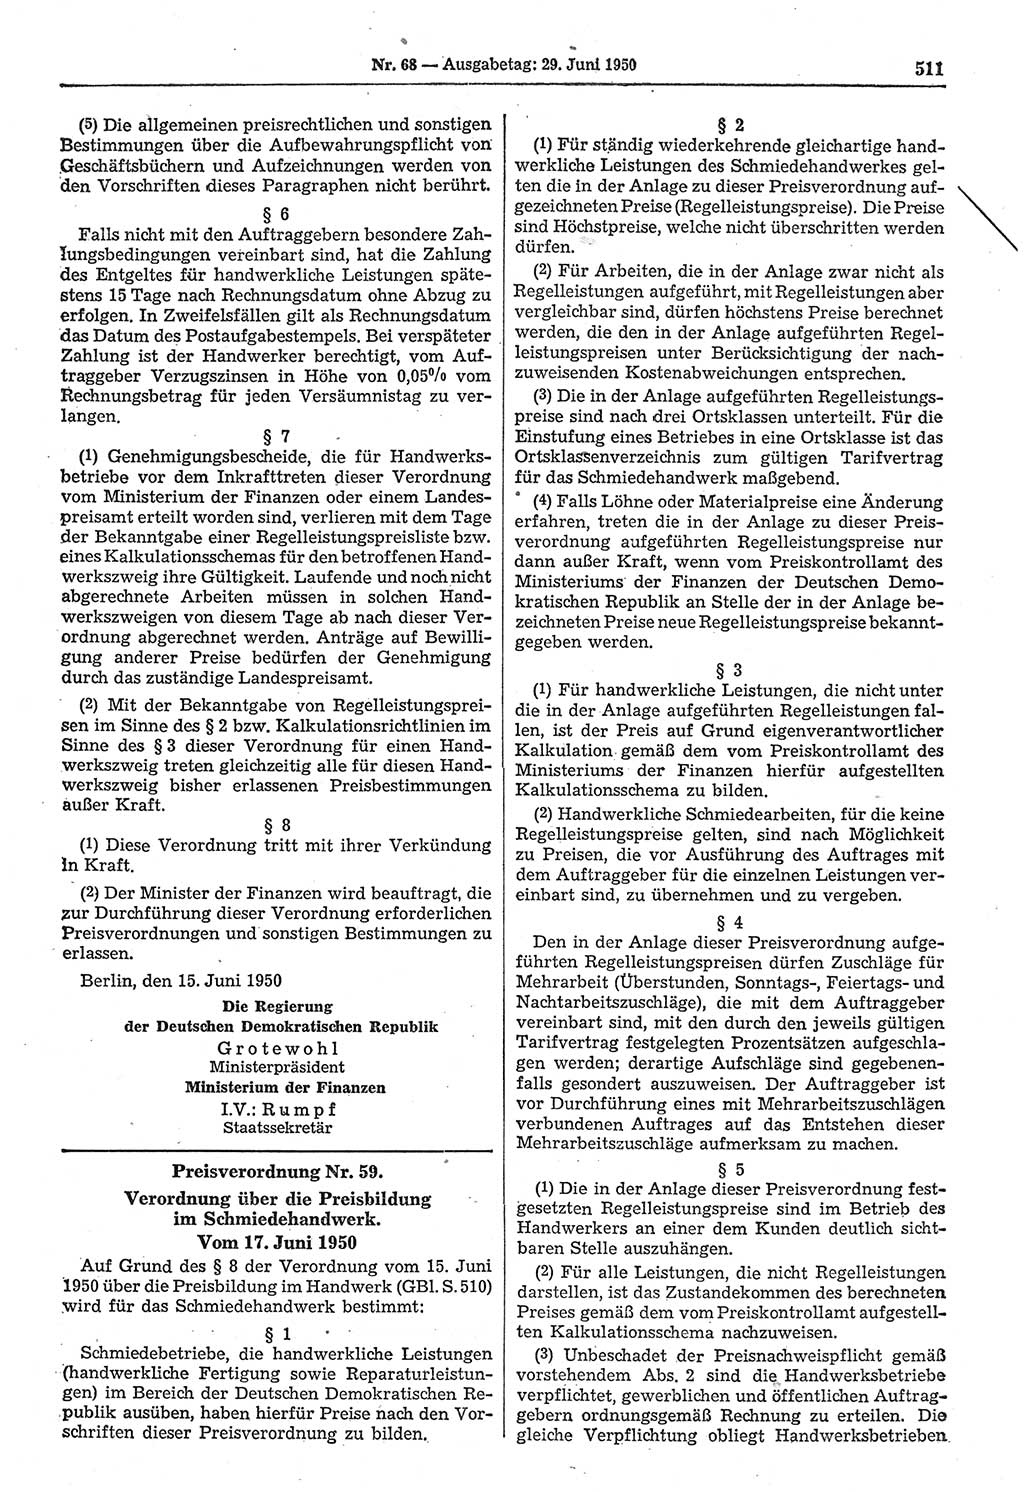 Gesetzblatt (GBl.) der Deutschen Demokratischen Republik (DDR) 1950, Seite 511 (GBl. DDR 1950, S. 511)